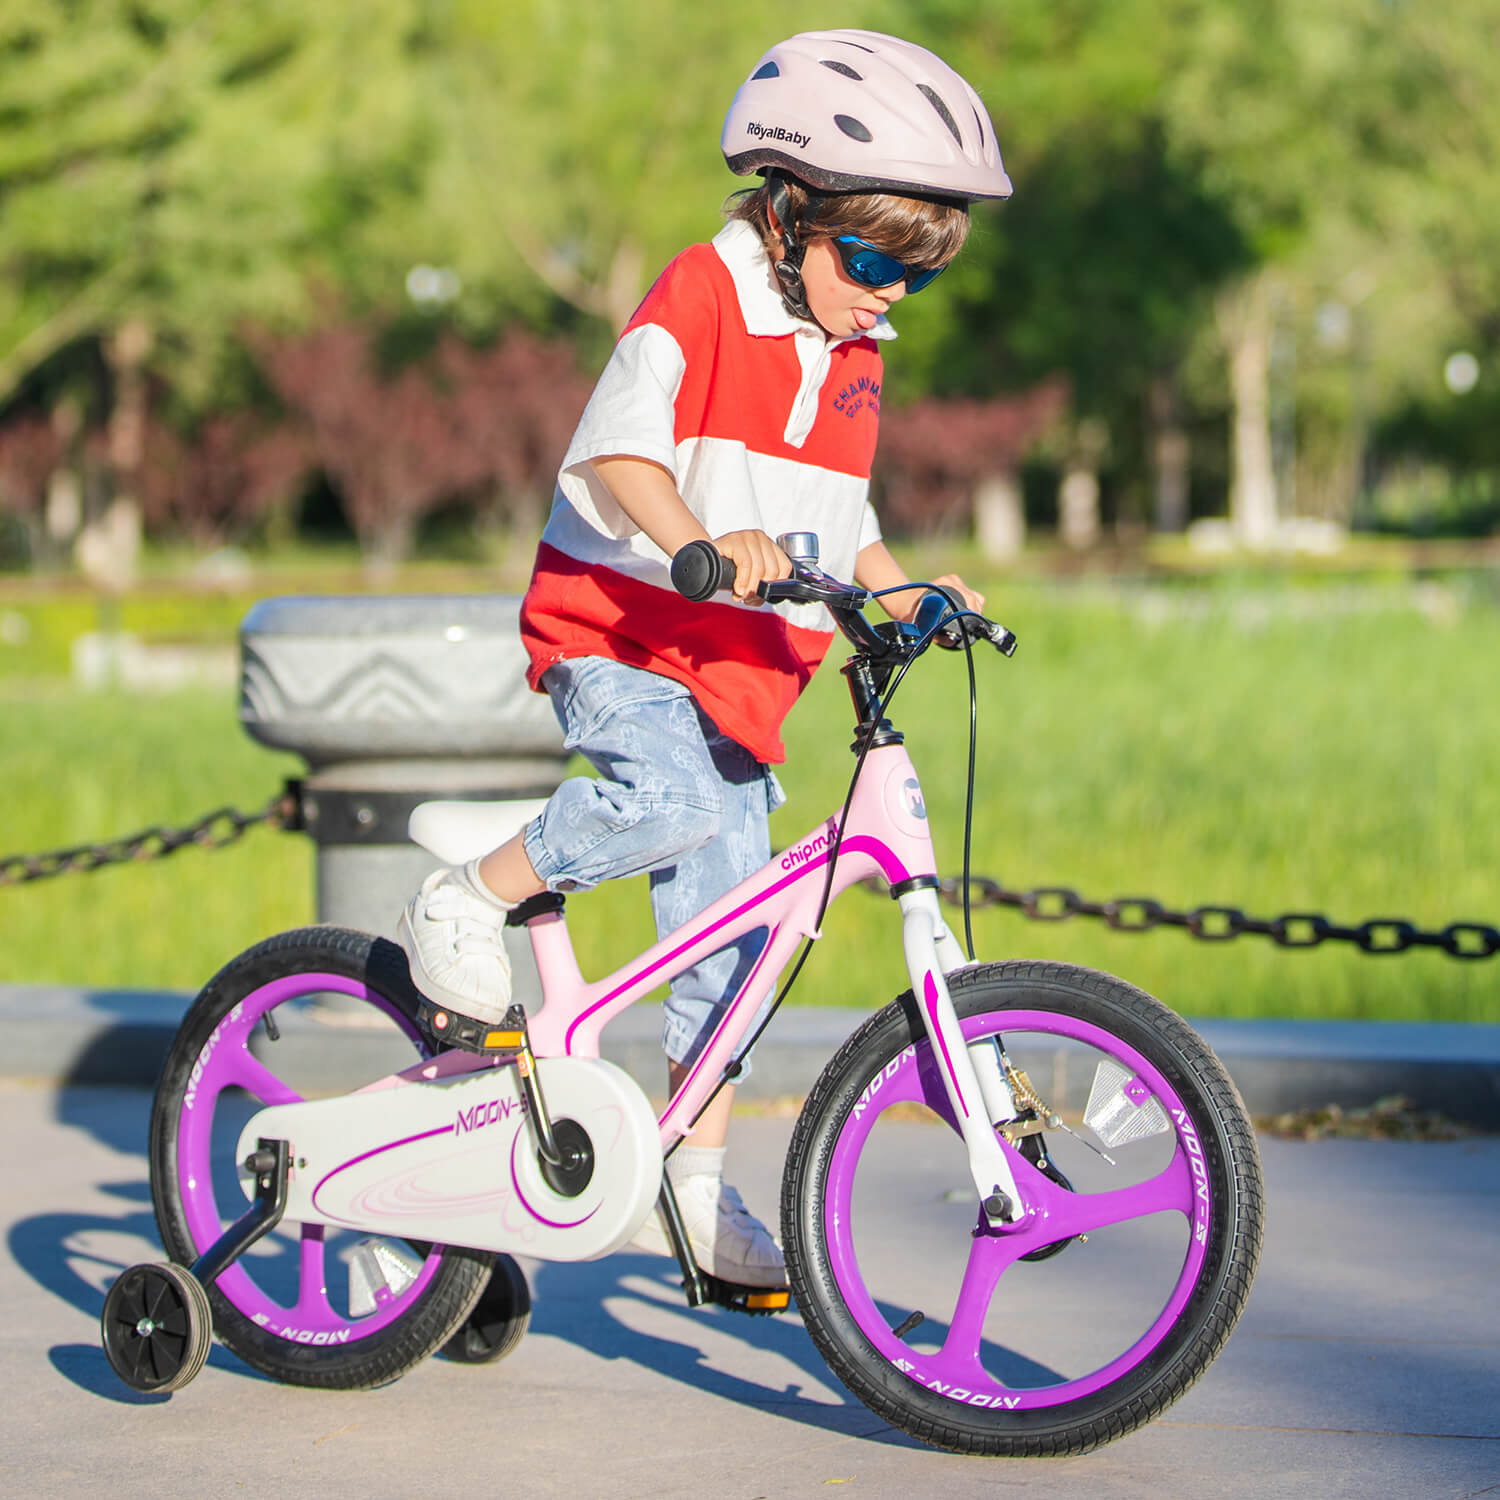 RoyalBaby Moon-5 Kids Bike